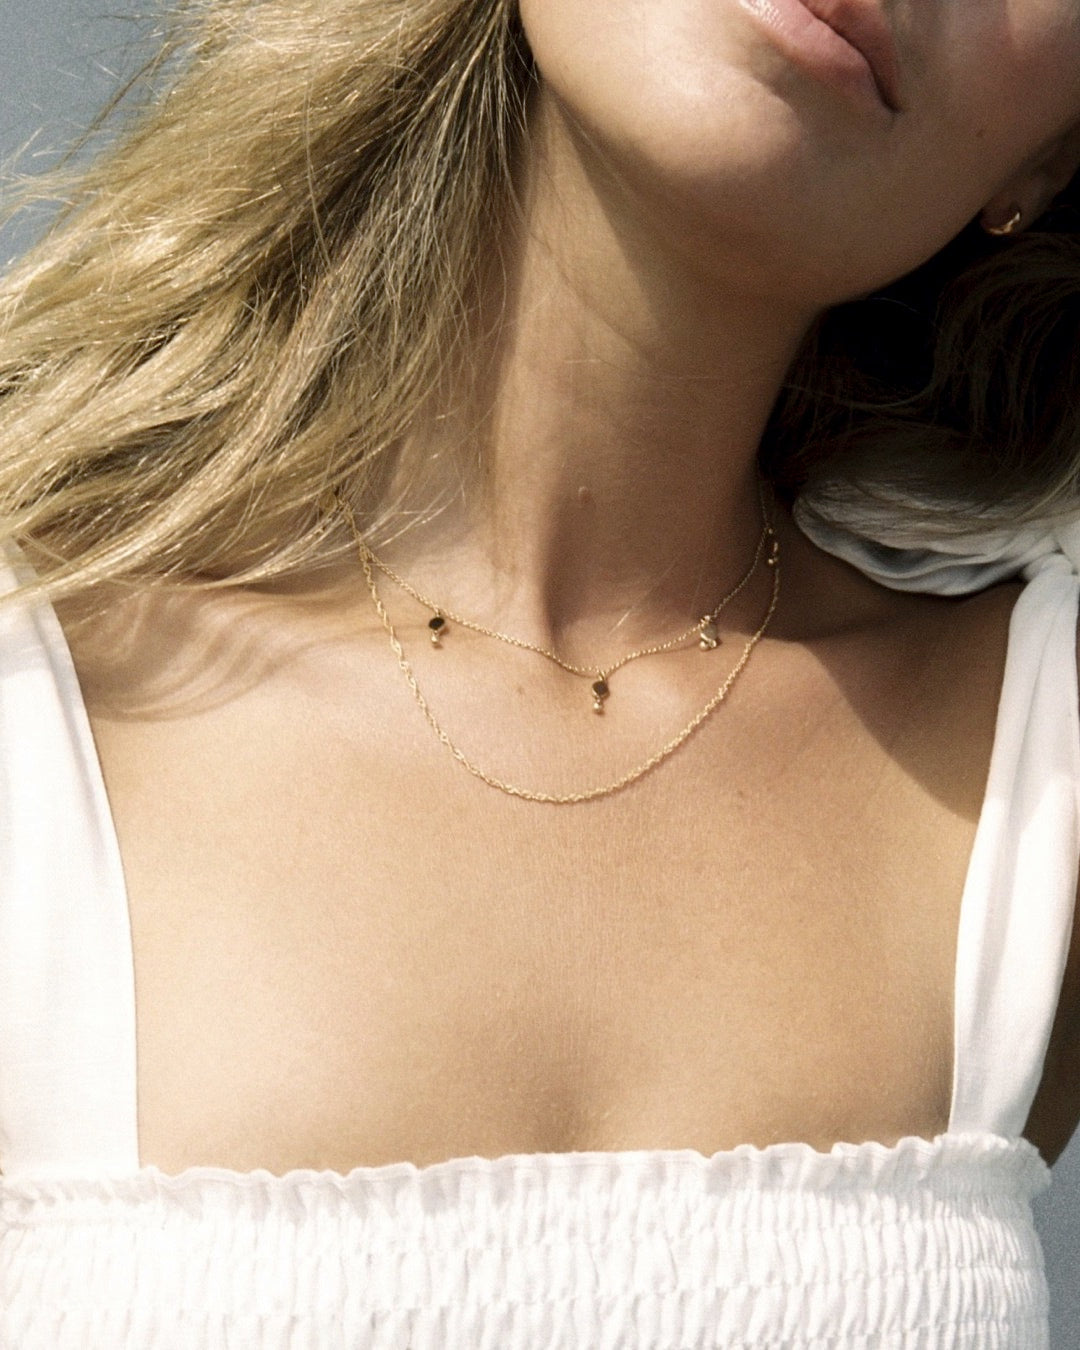 Twist Chain Necklace - Prae Store